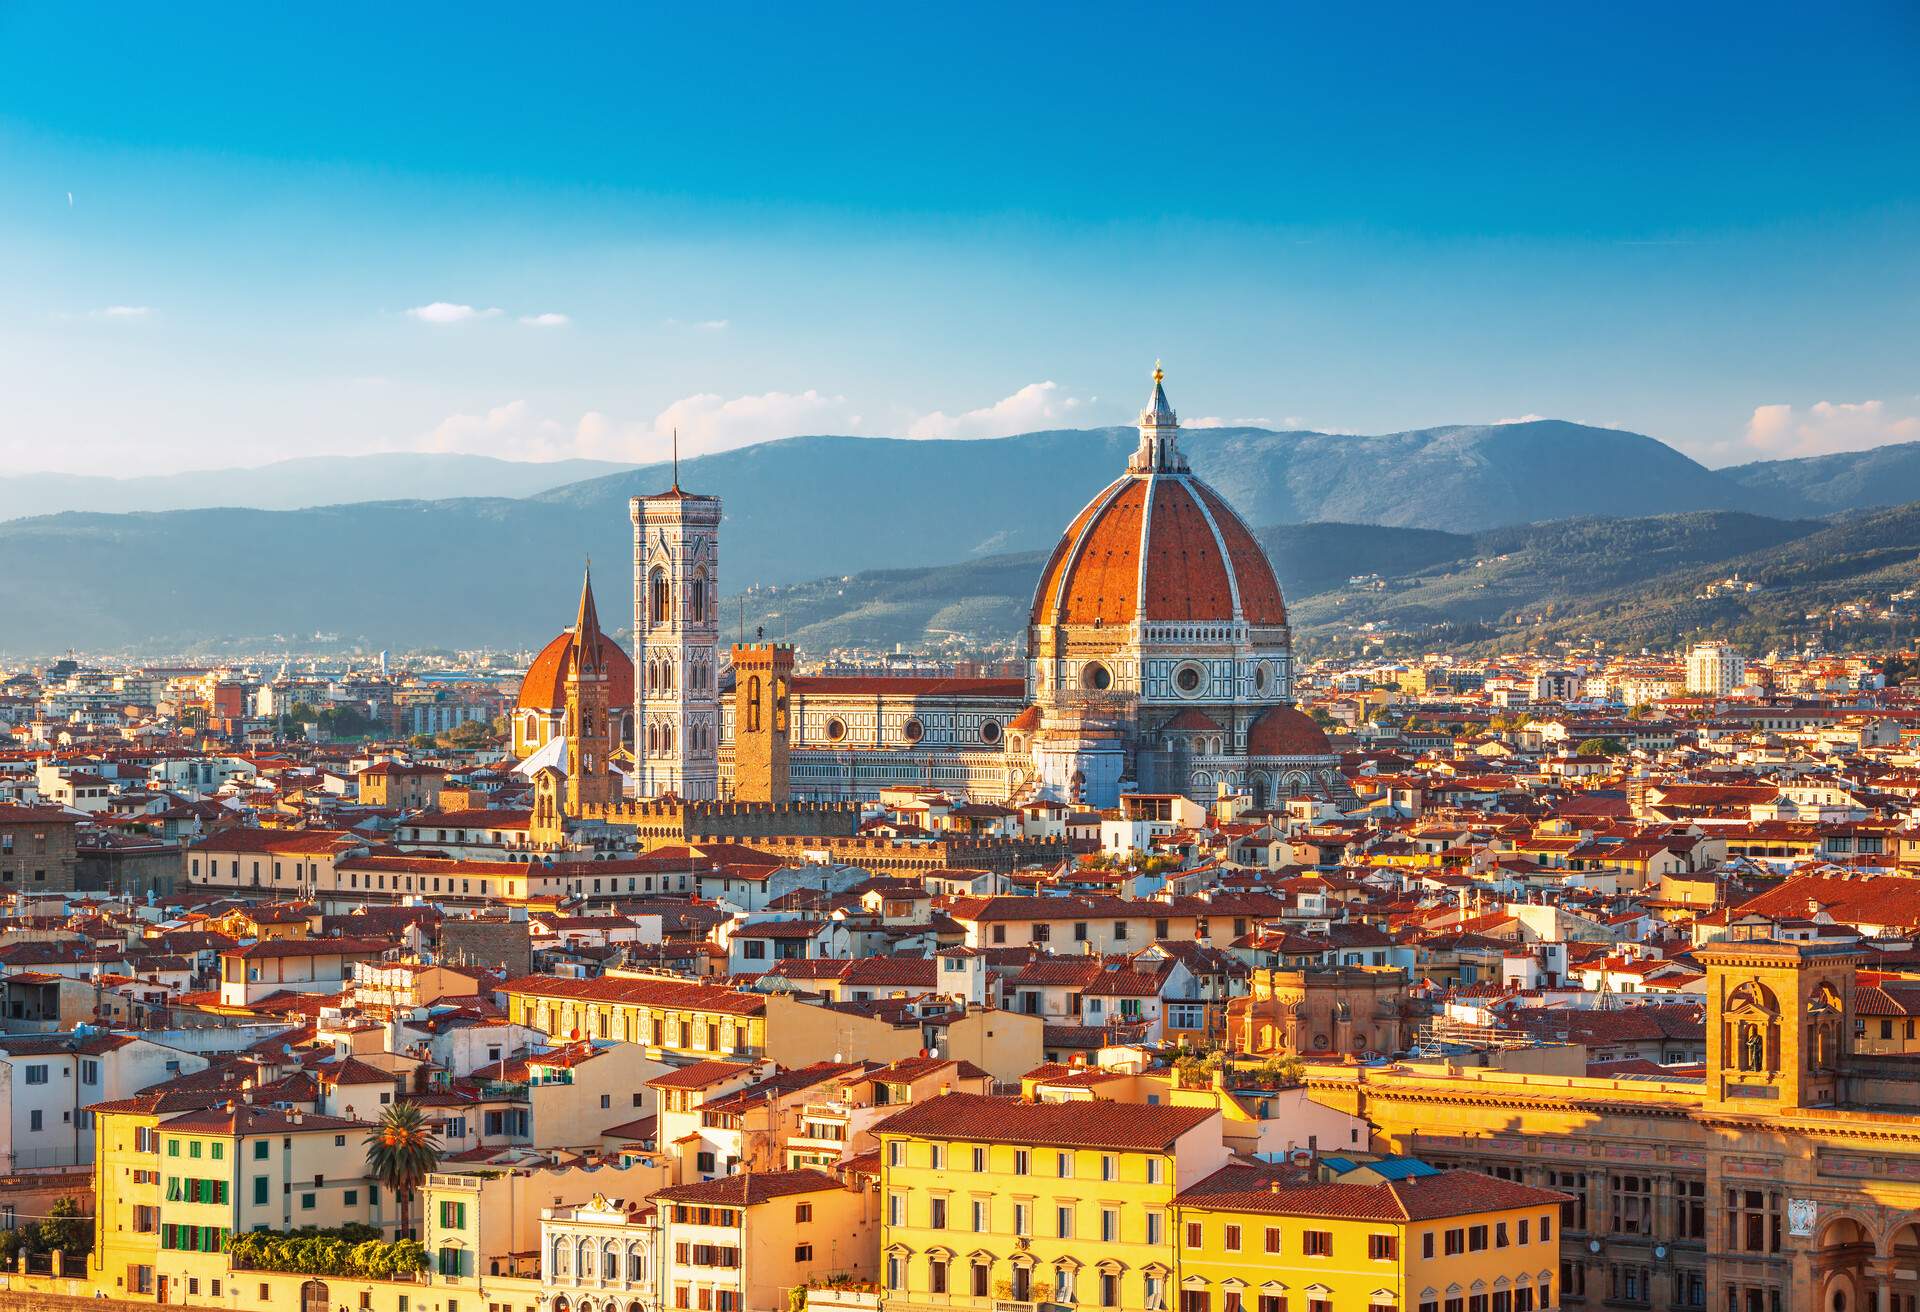 Cae rendido ante las mejores ciudades de Italia | KAYAK